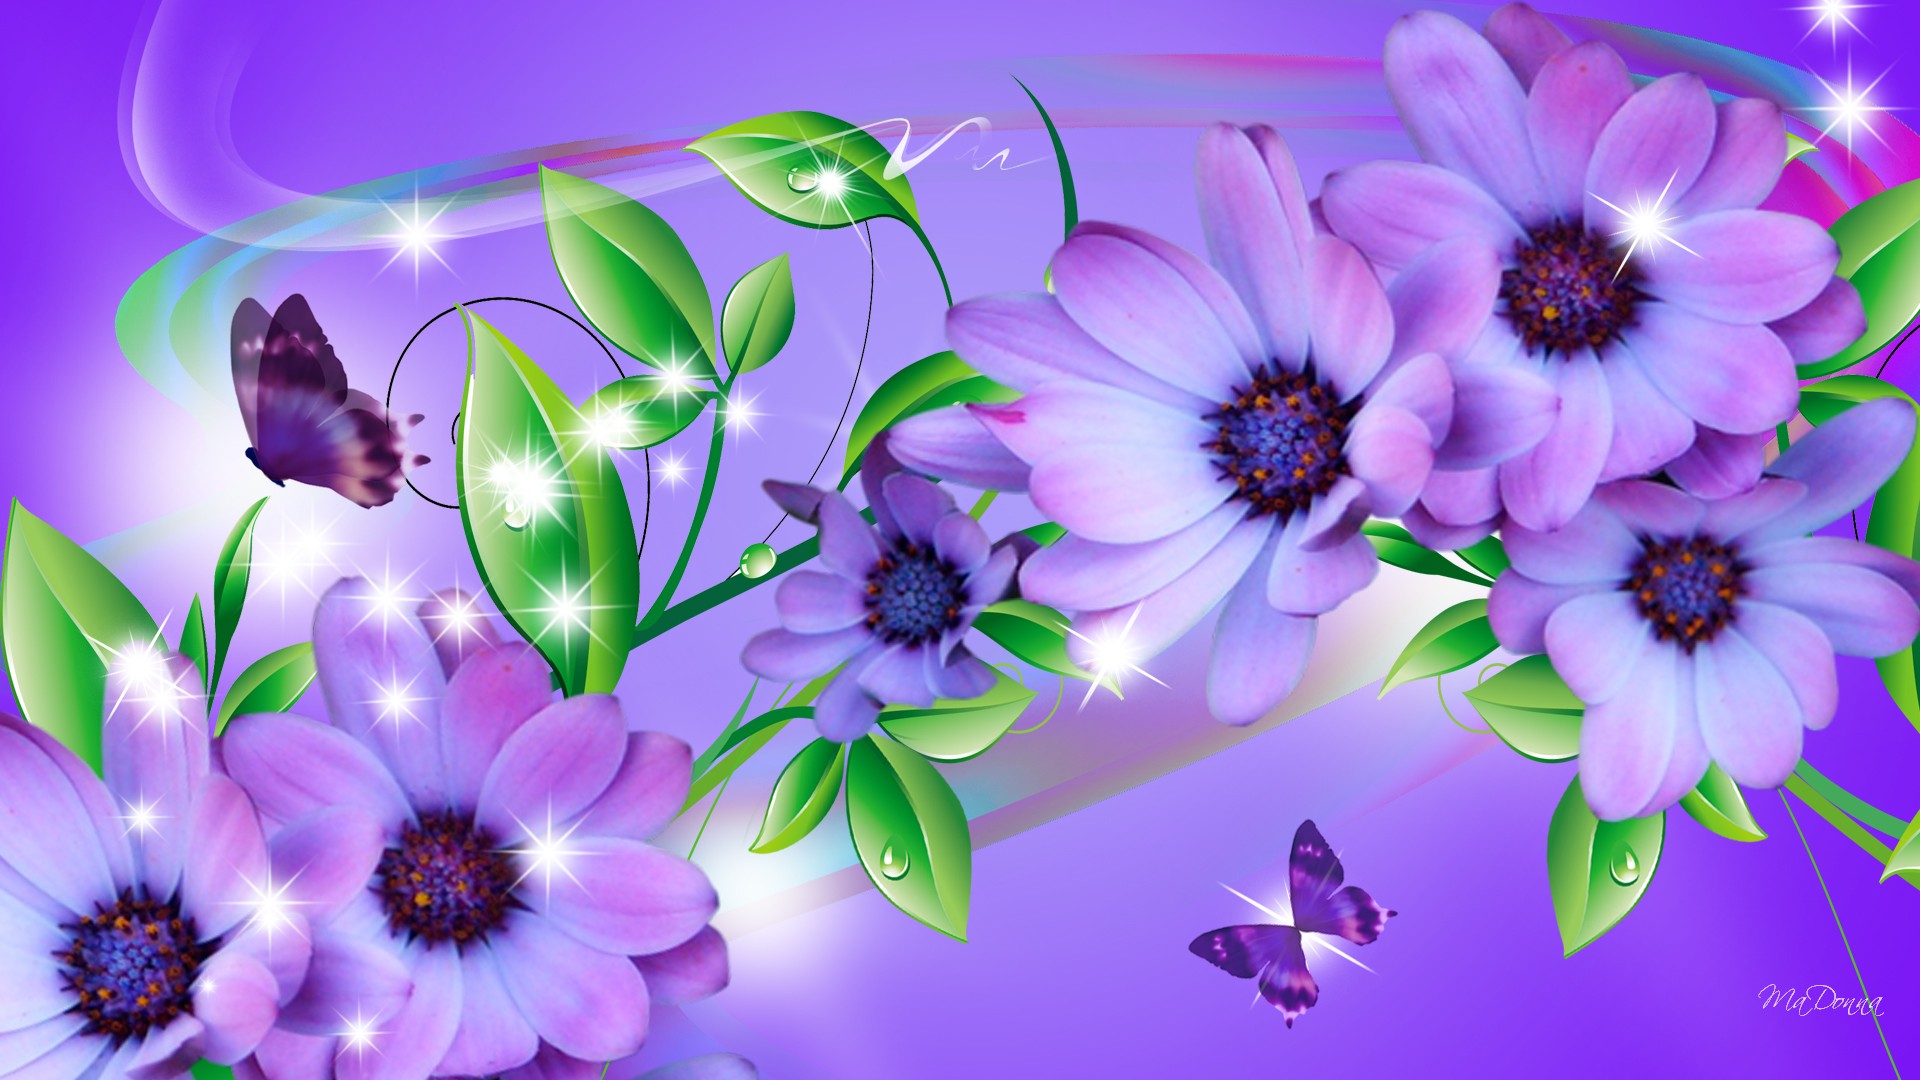 Обложка на экран телефона. Цветы картинки обои. Изображение цветов. Цветочный фон. Красивый фон цветы.